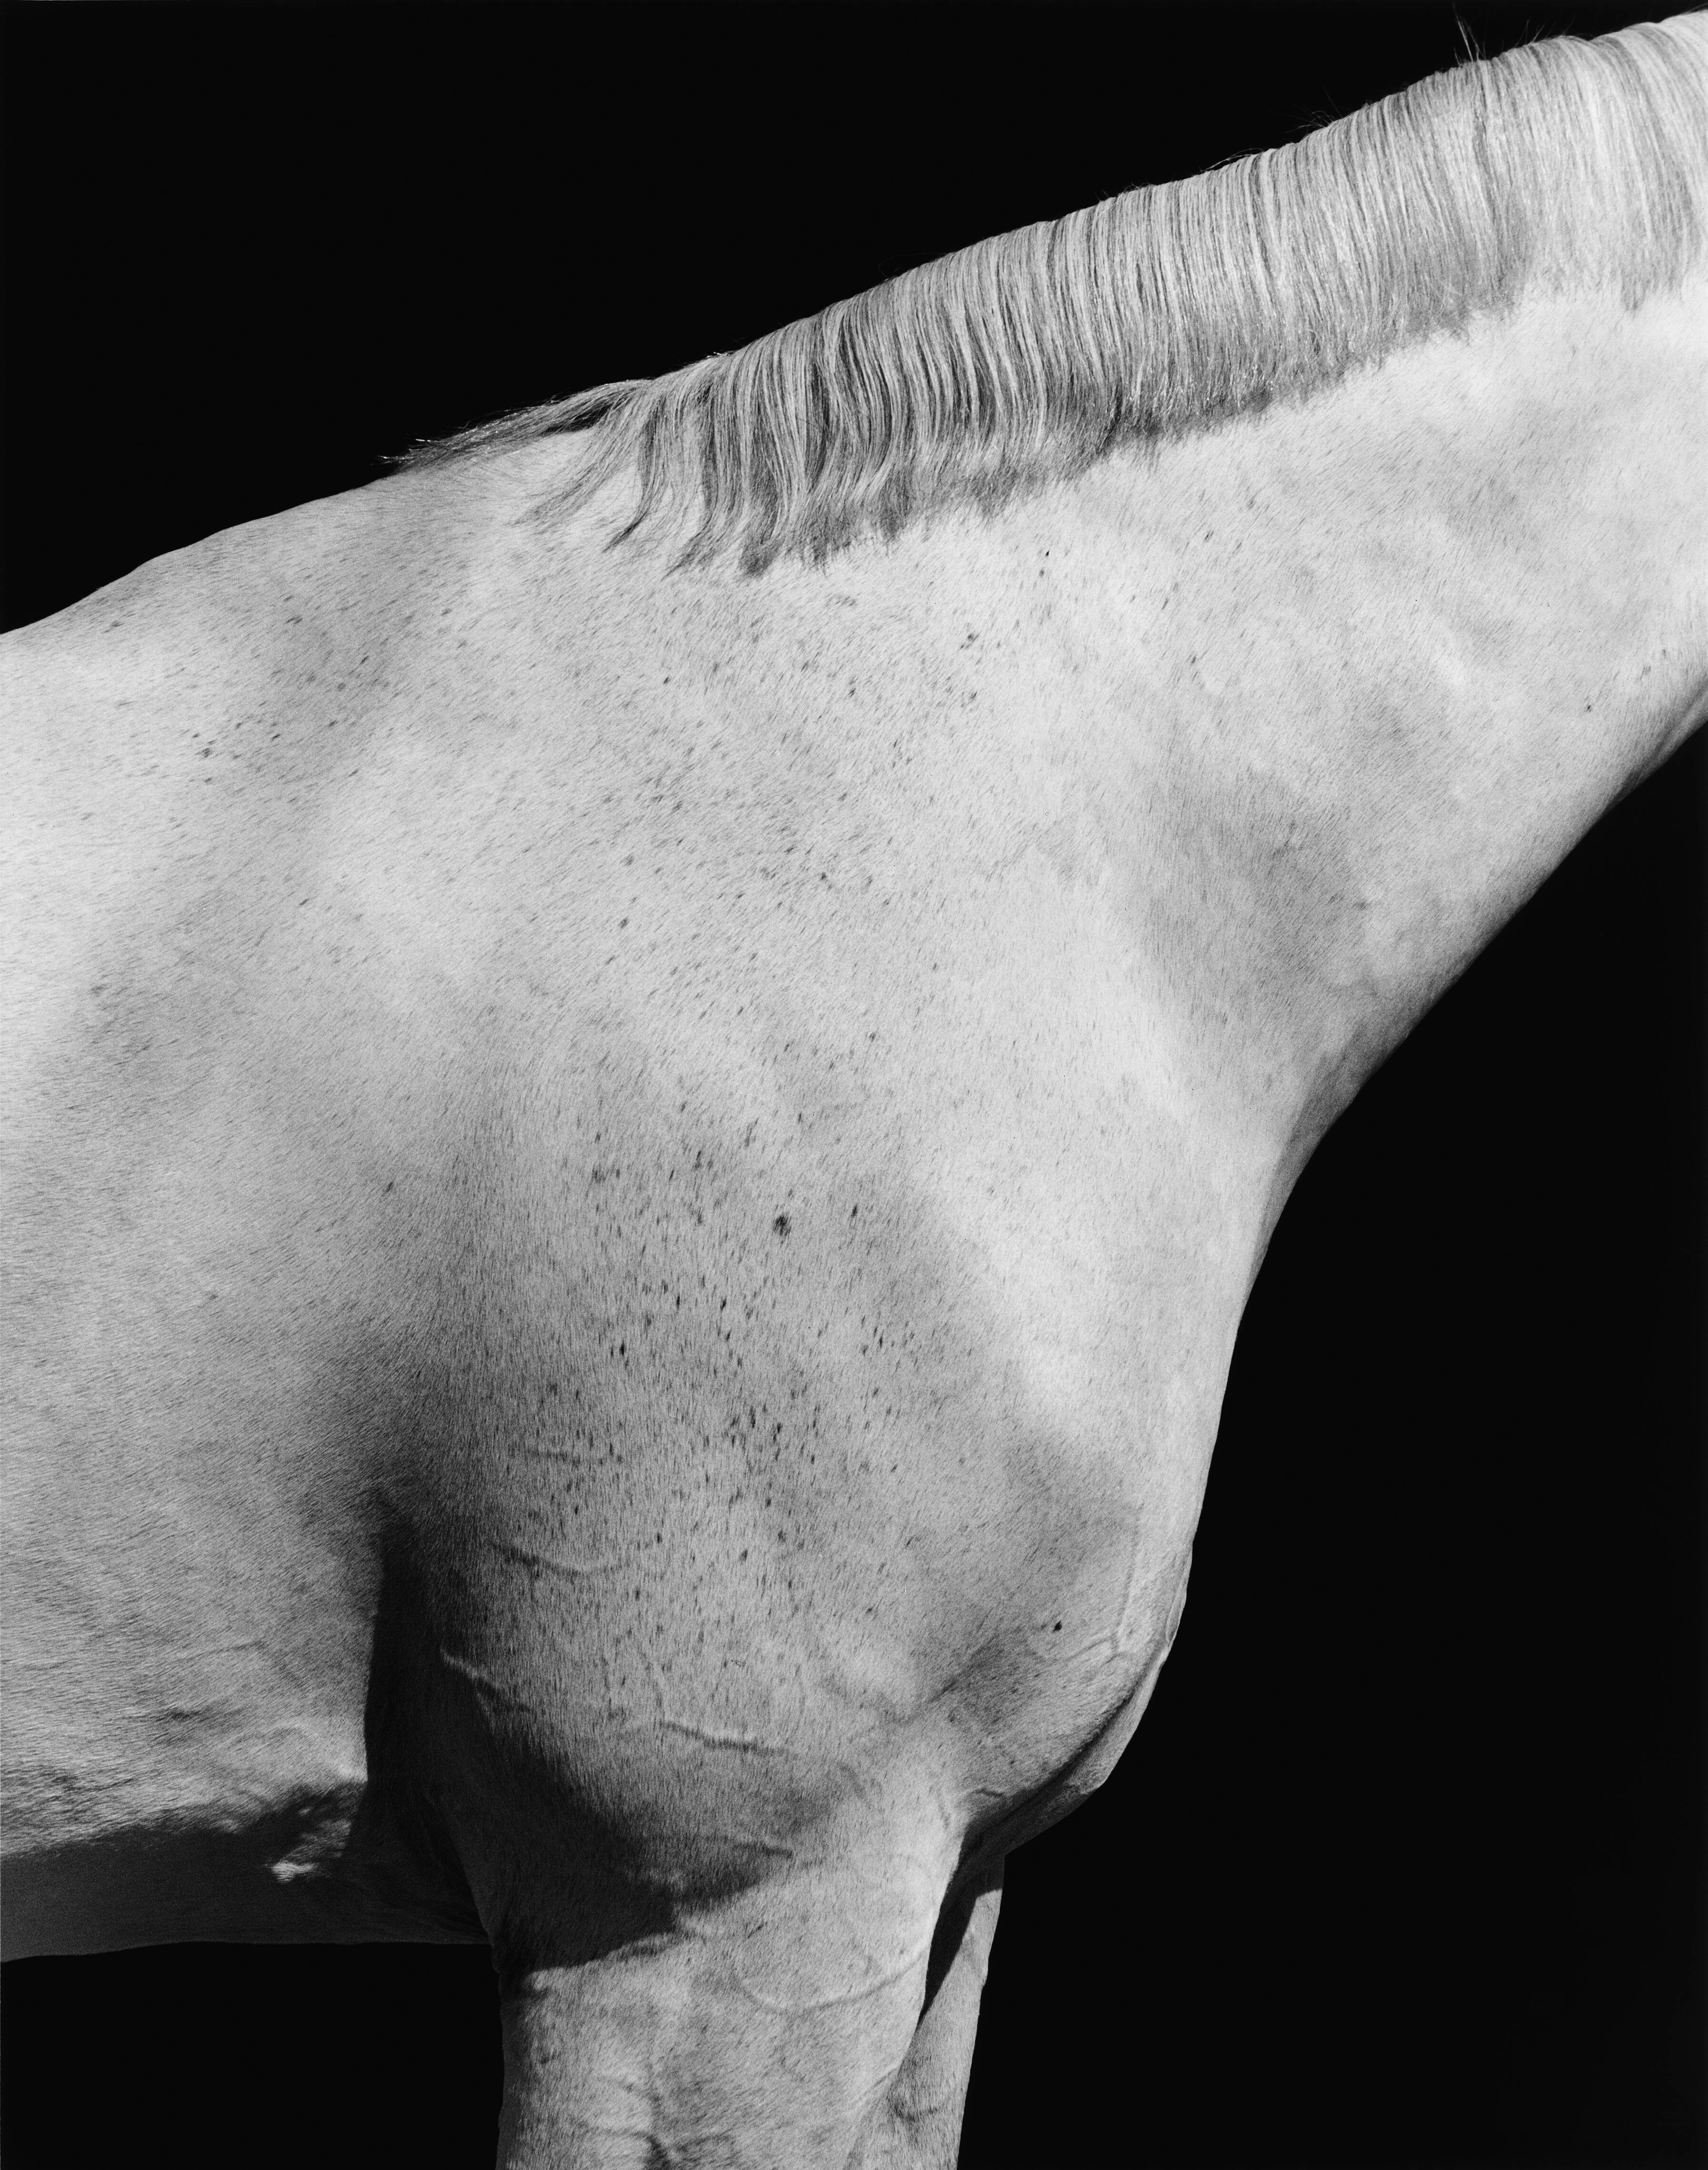 Steven Klein’s deep, unnerving love of horses